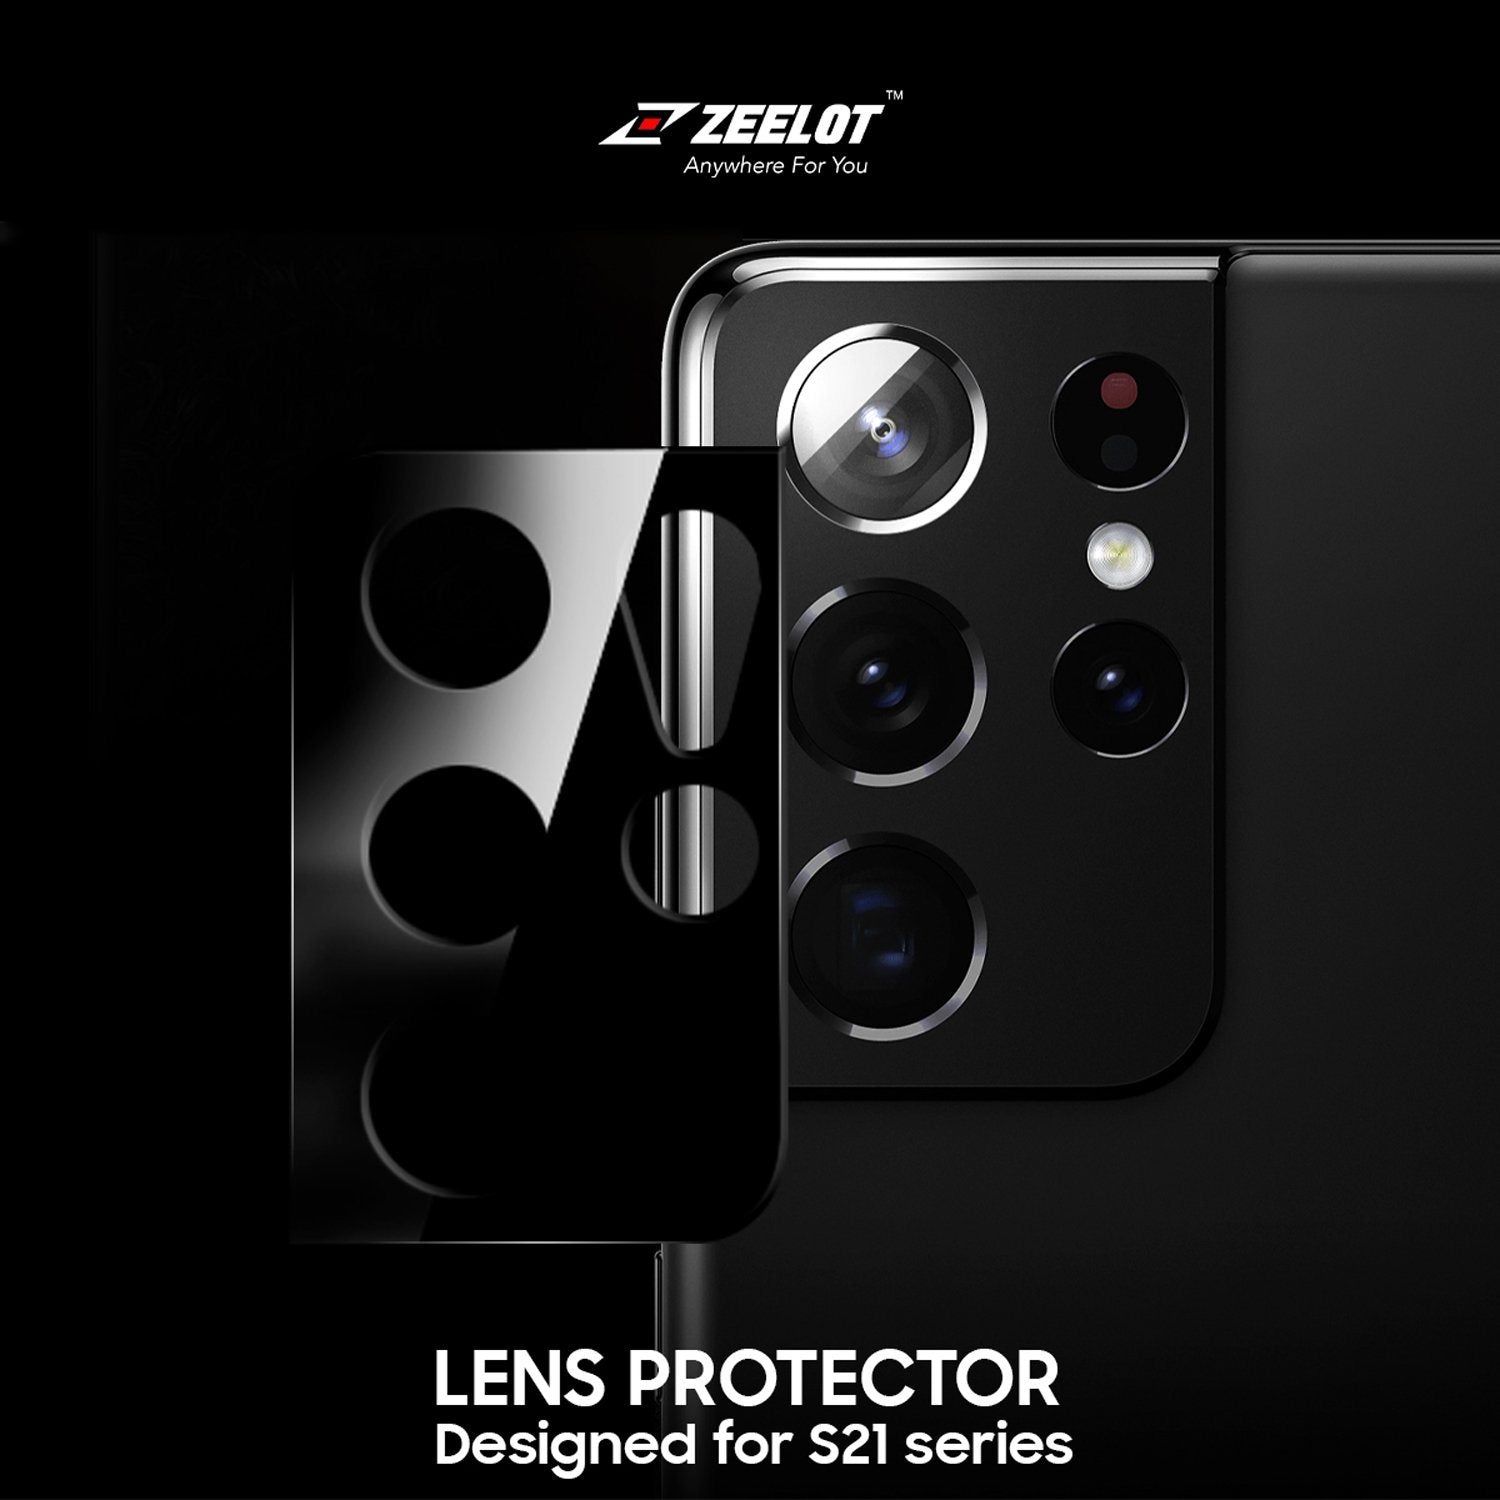 ZEELOT Samsung Galaxy S21 Lens Protector, Black S21 ZEELOT 